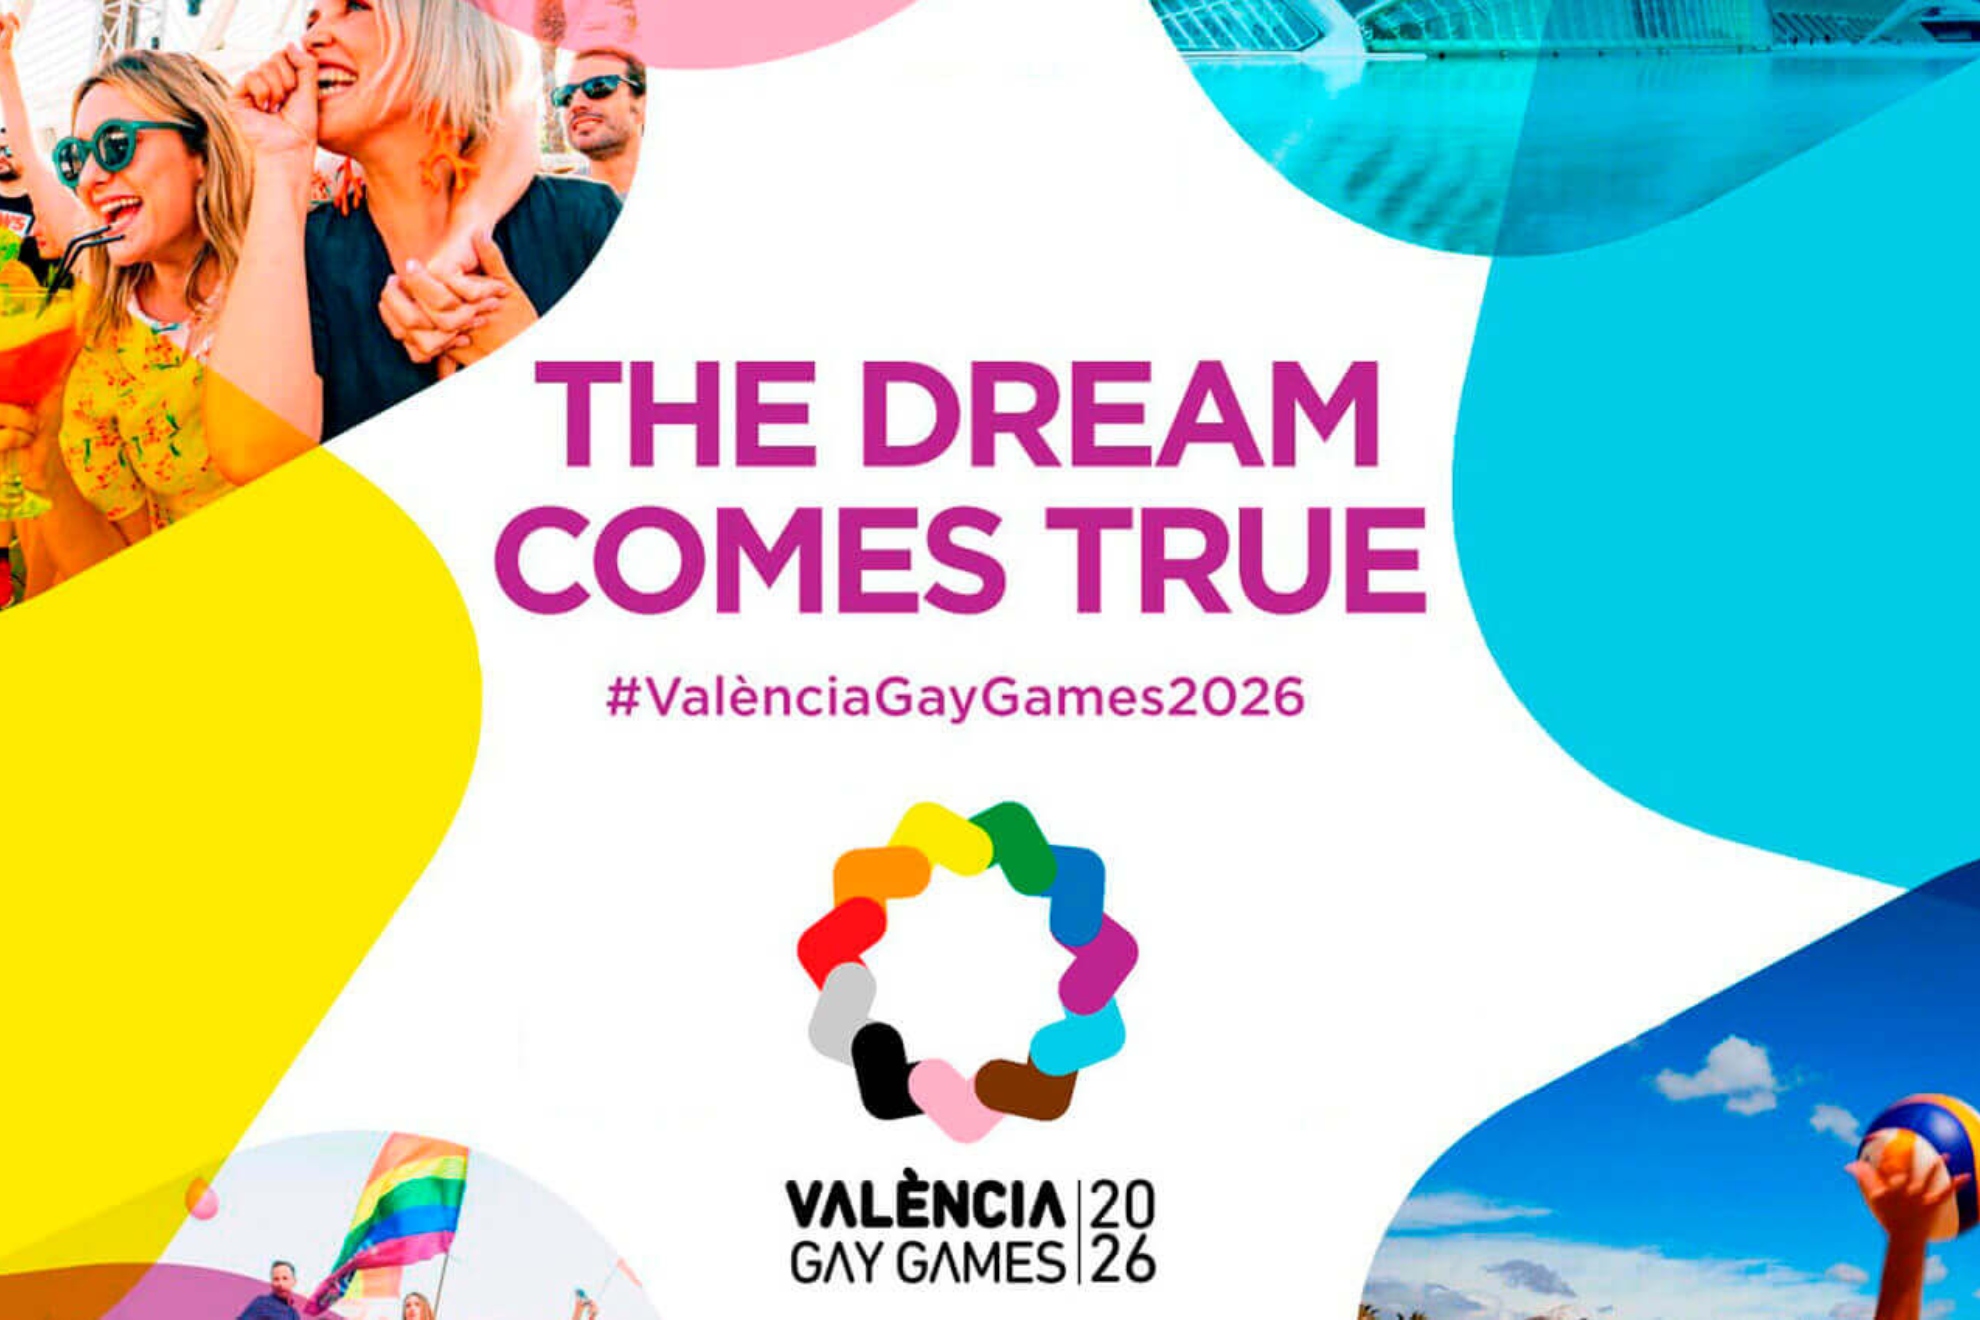 Cartel promocional de los Valencia Gay Games 2026.